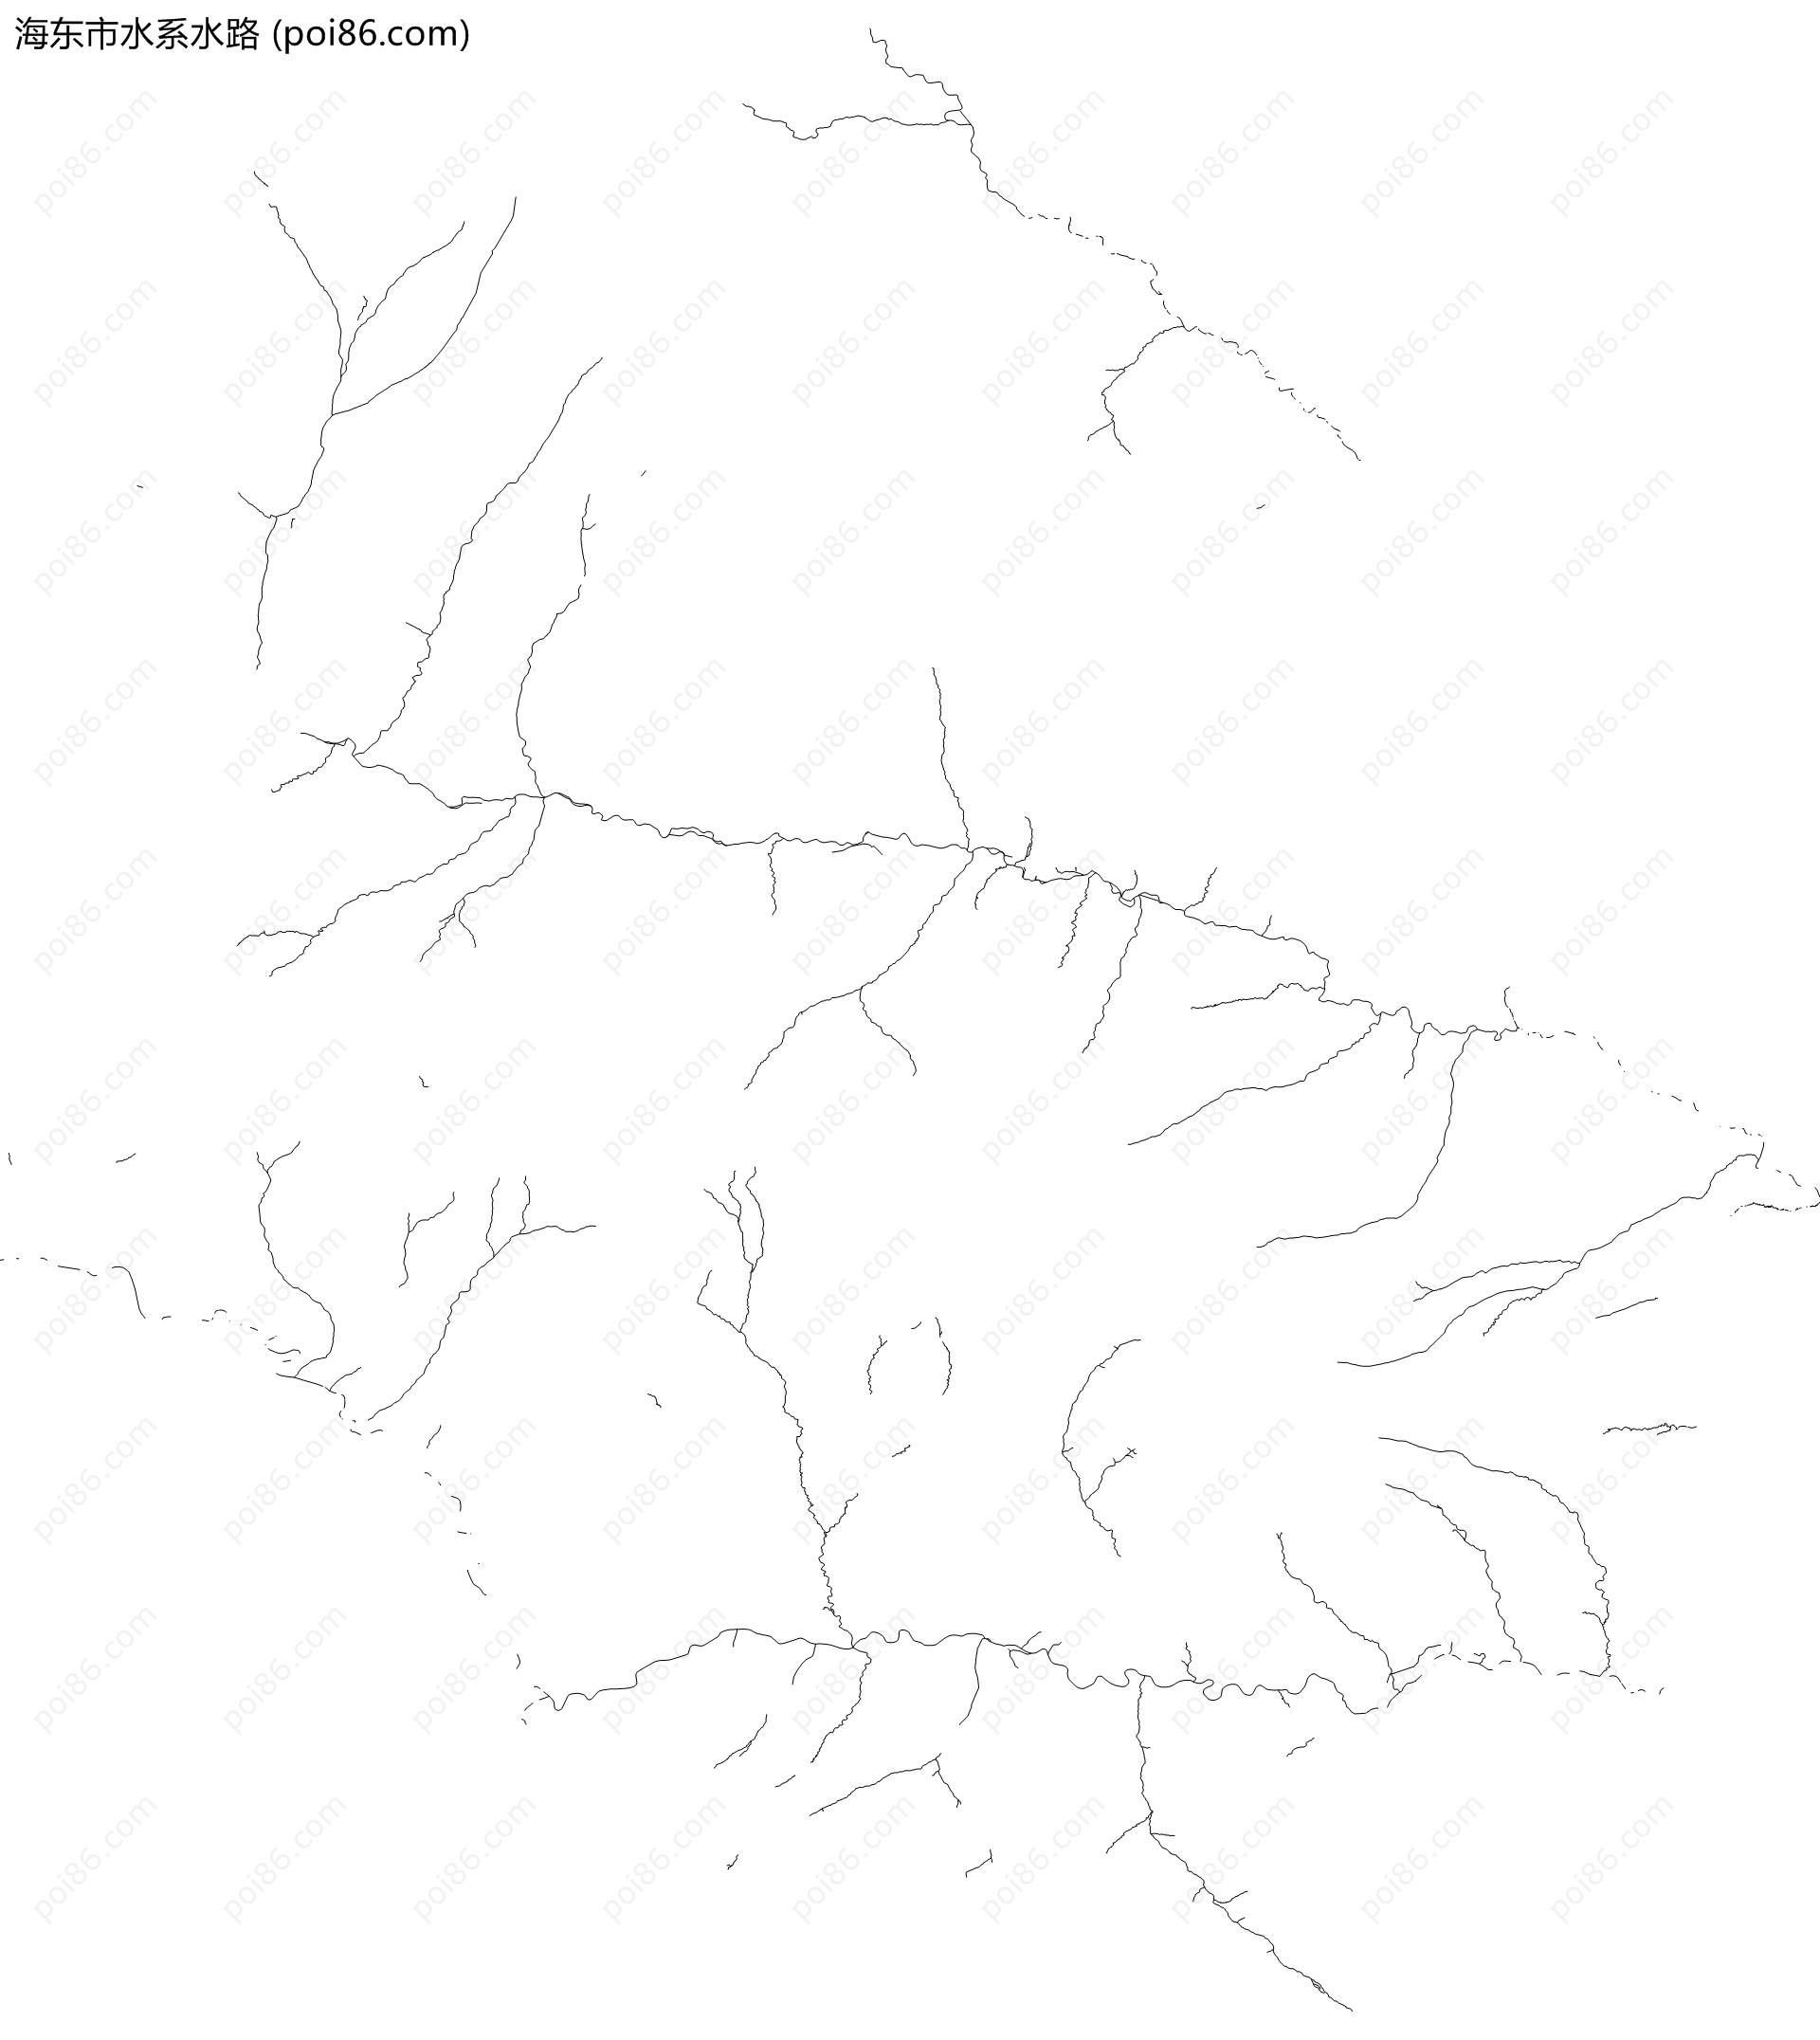 海东市水系水路地图